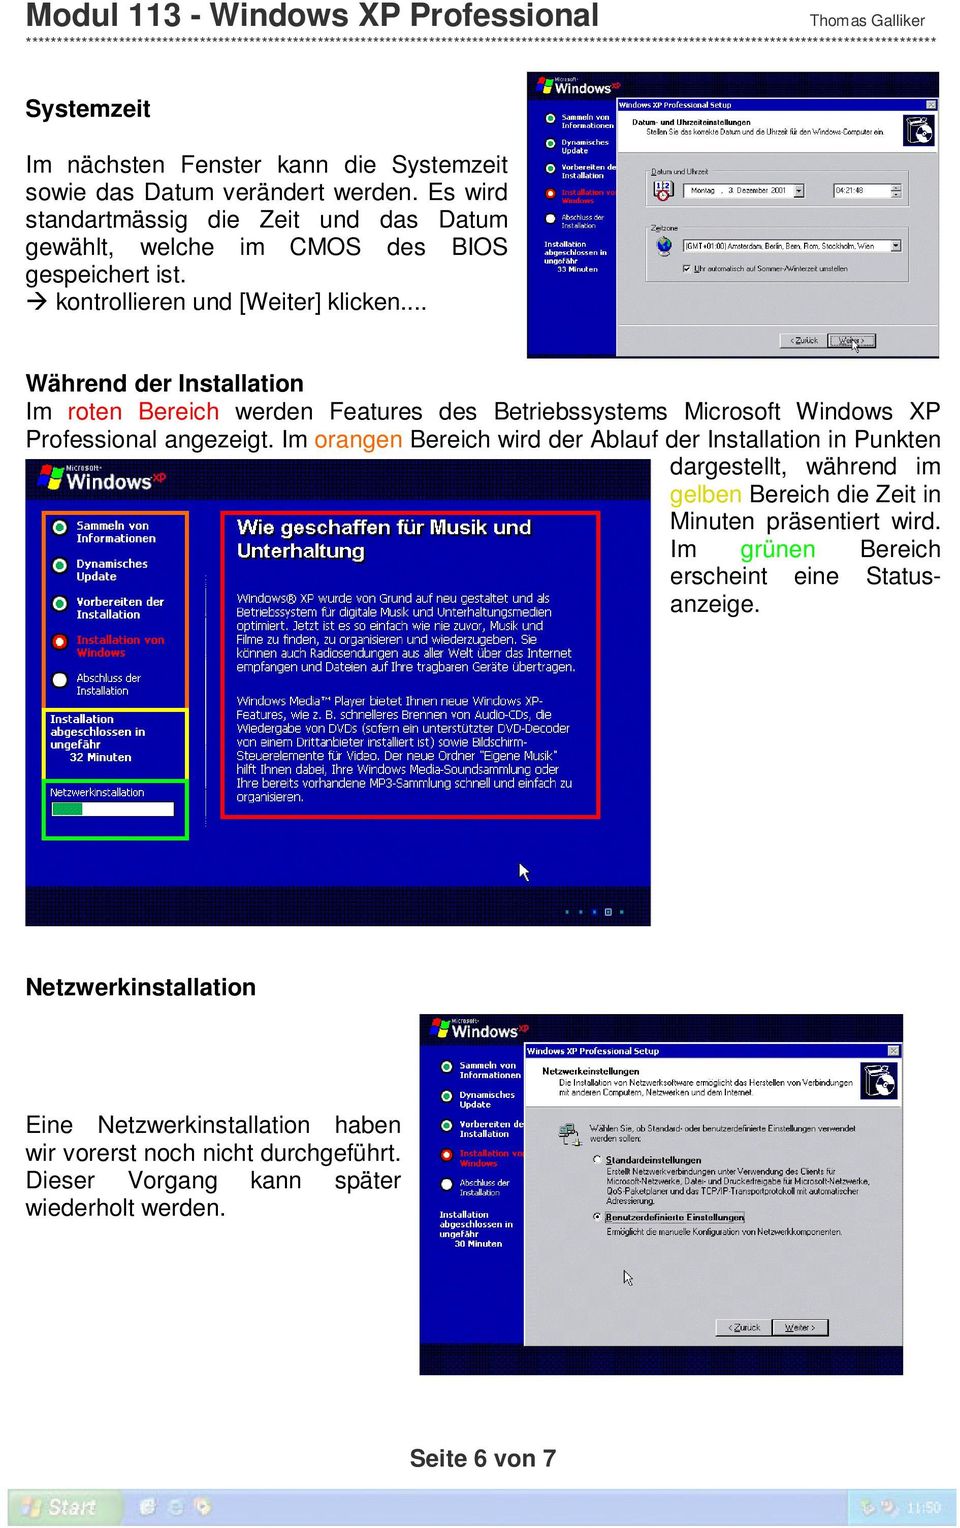 .. Während der Installation Im roten Bereich werden Features des Betriebssystems Microsoft Windows XP Professional angezeigt.